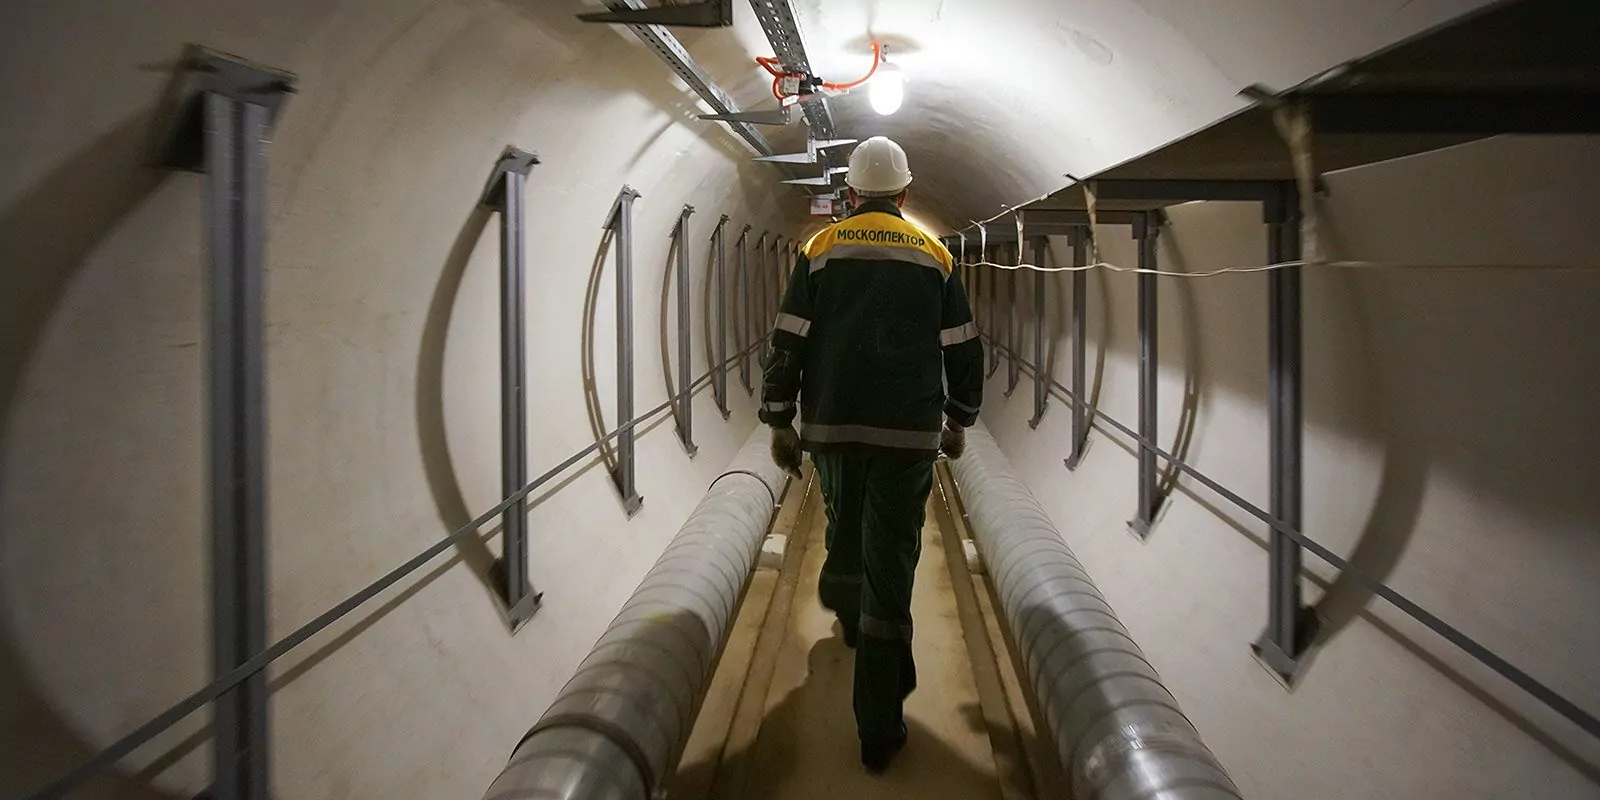 15 коммуникационных тоннелей было обновлено в столице за 2022 год, фото